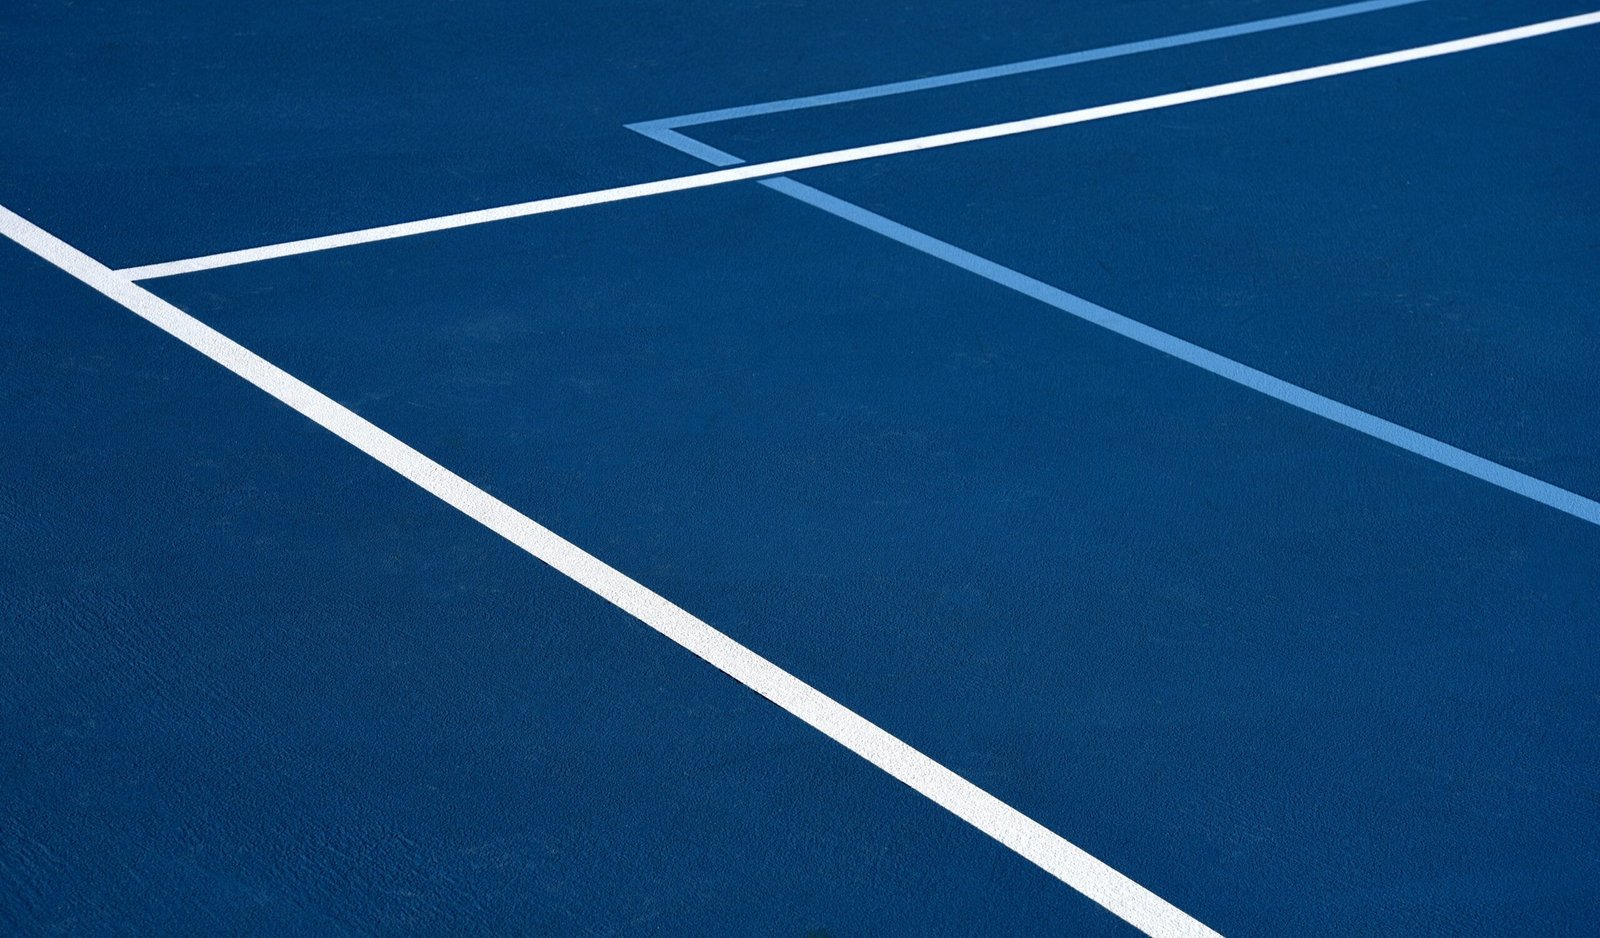 Entdecken Sie alles über Tennis, von Regeln und Techniken bis hin zu den neuesten Nachrichten und Ereignissen in der Welt des Tennis.